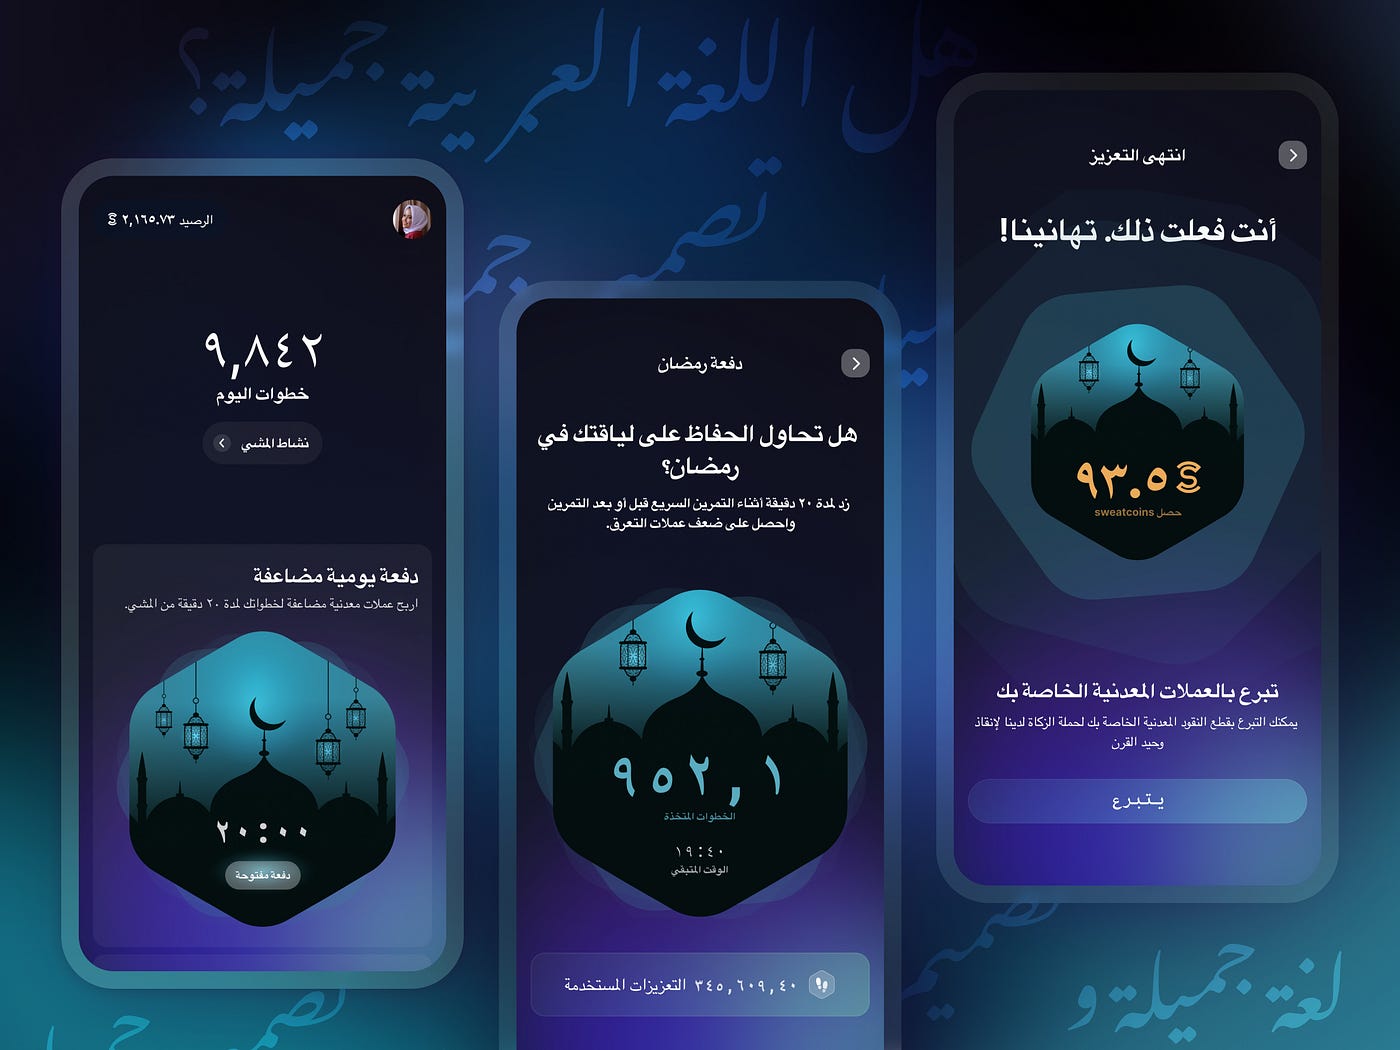 Learn Typescript In Arabic 2022 - #25 - Interface Extend 